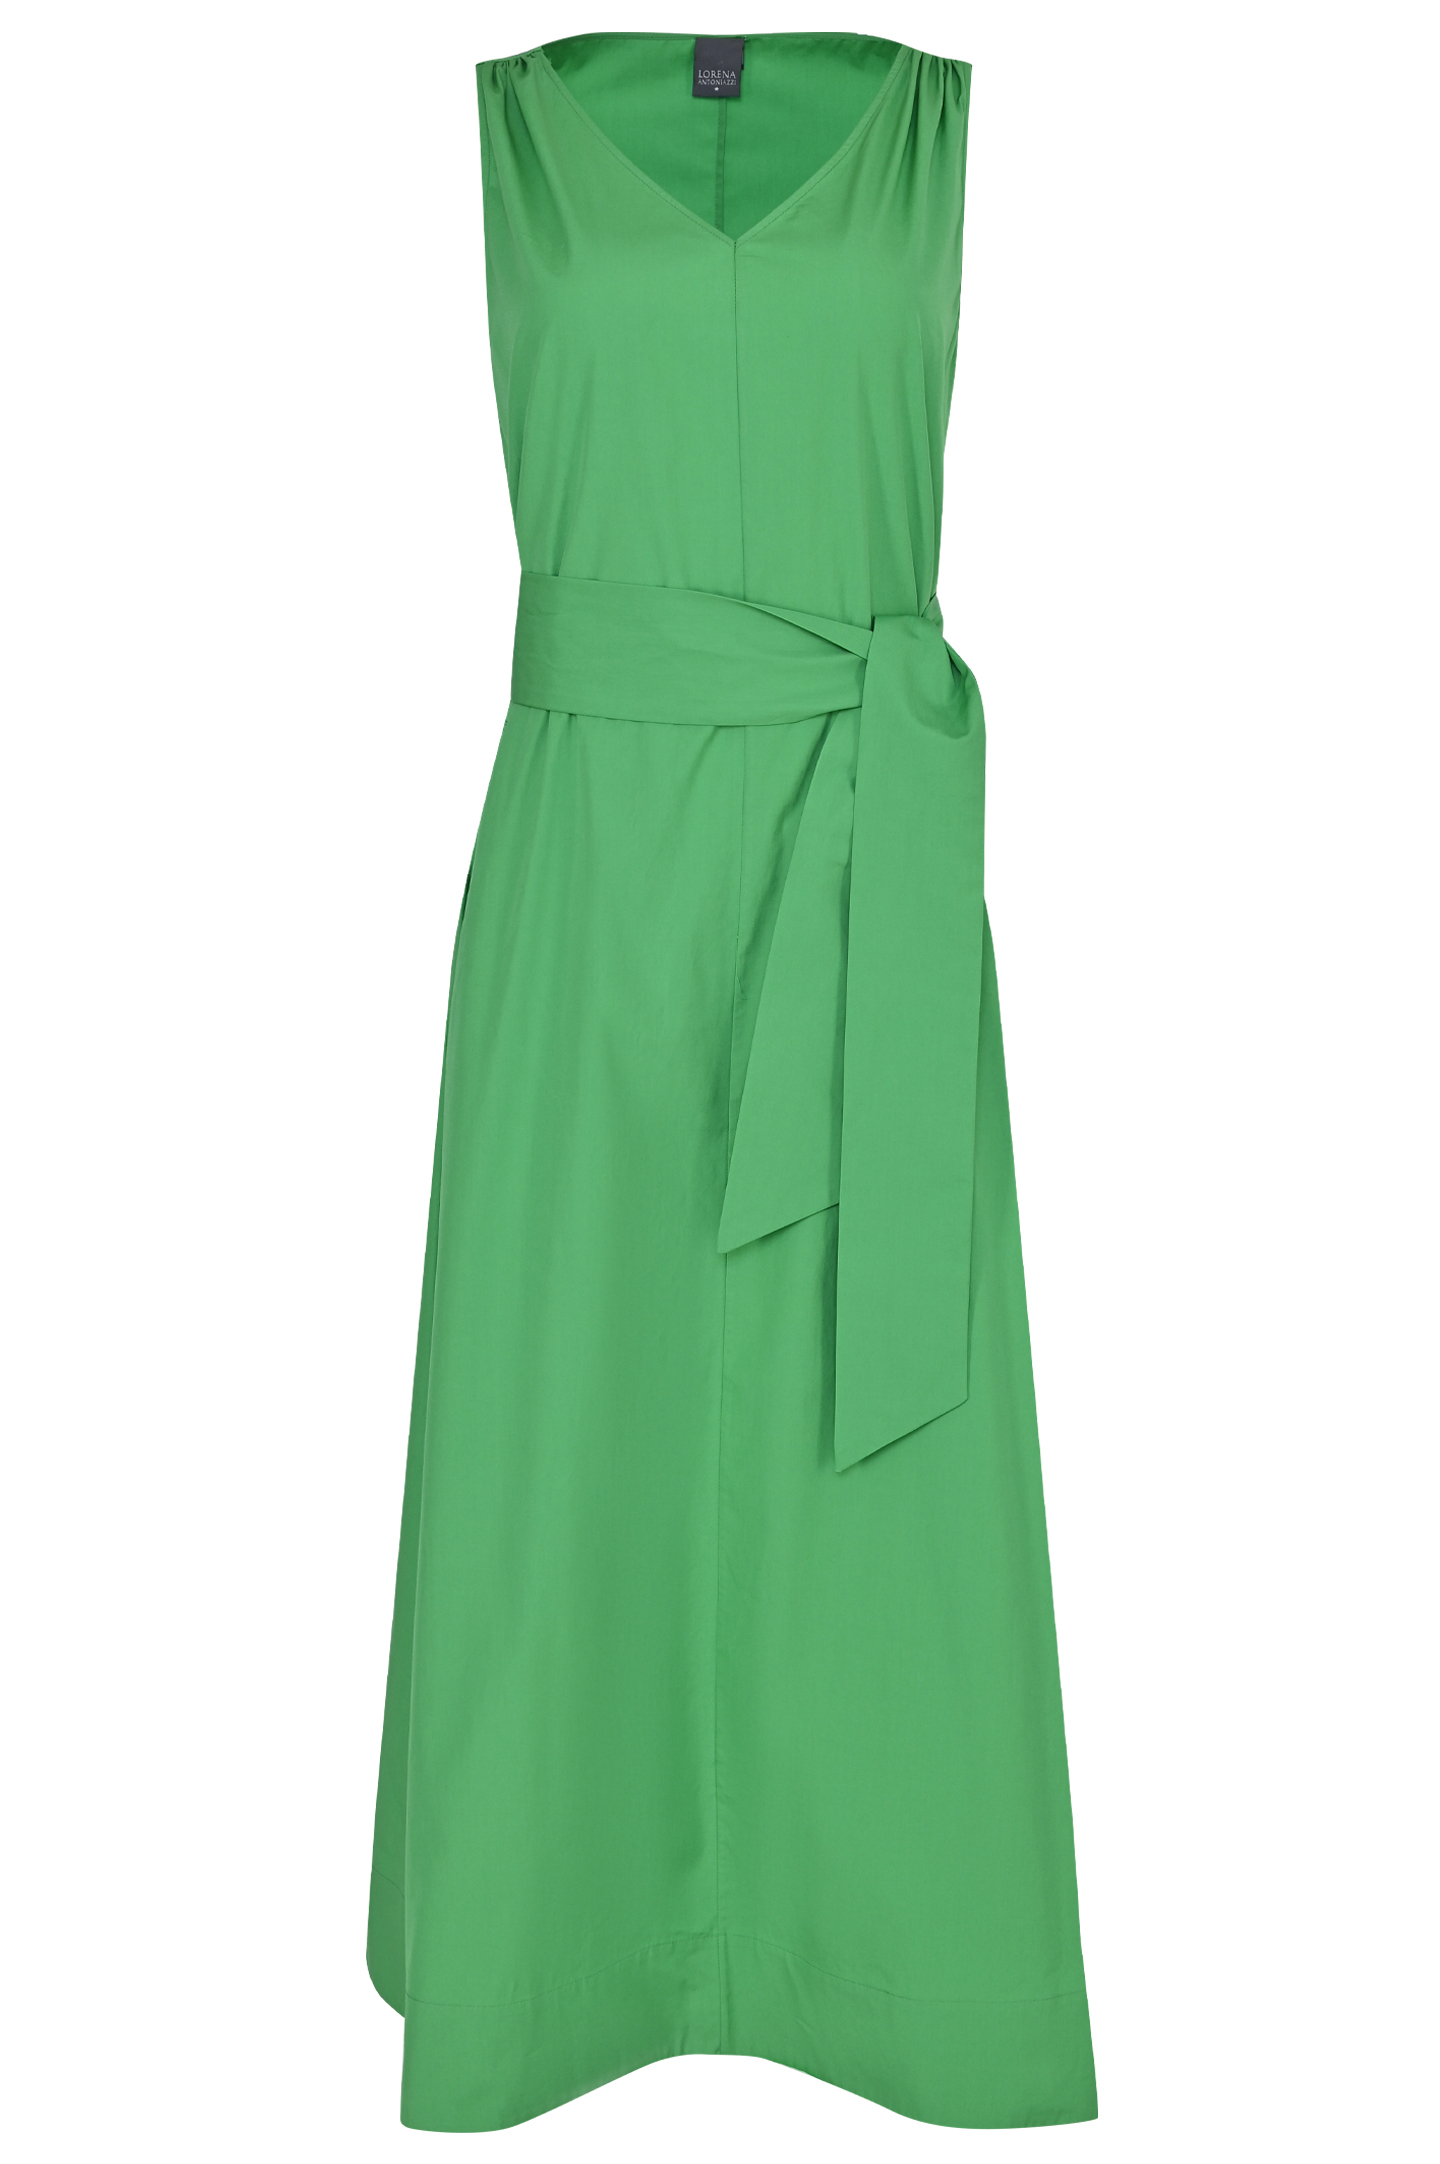 Платье LORENA ANTONIAZZI P2369AB28A/3434, цвет: Зеленый, Женский